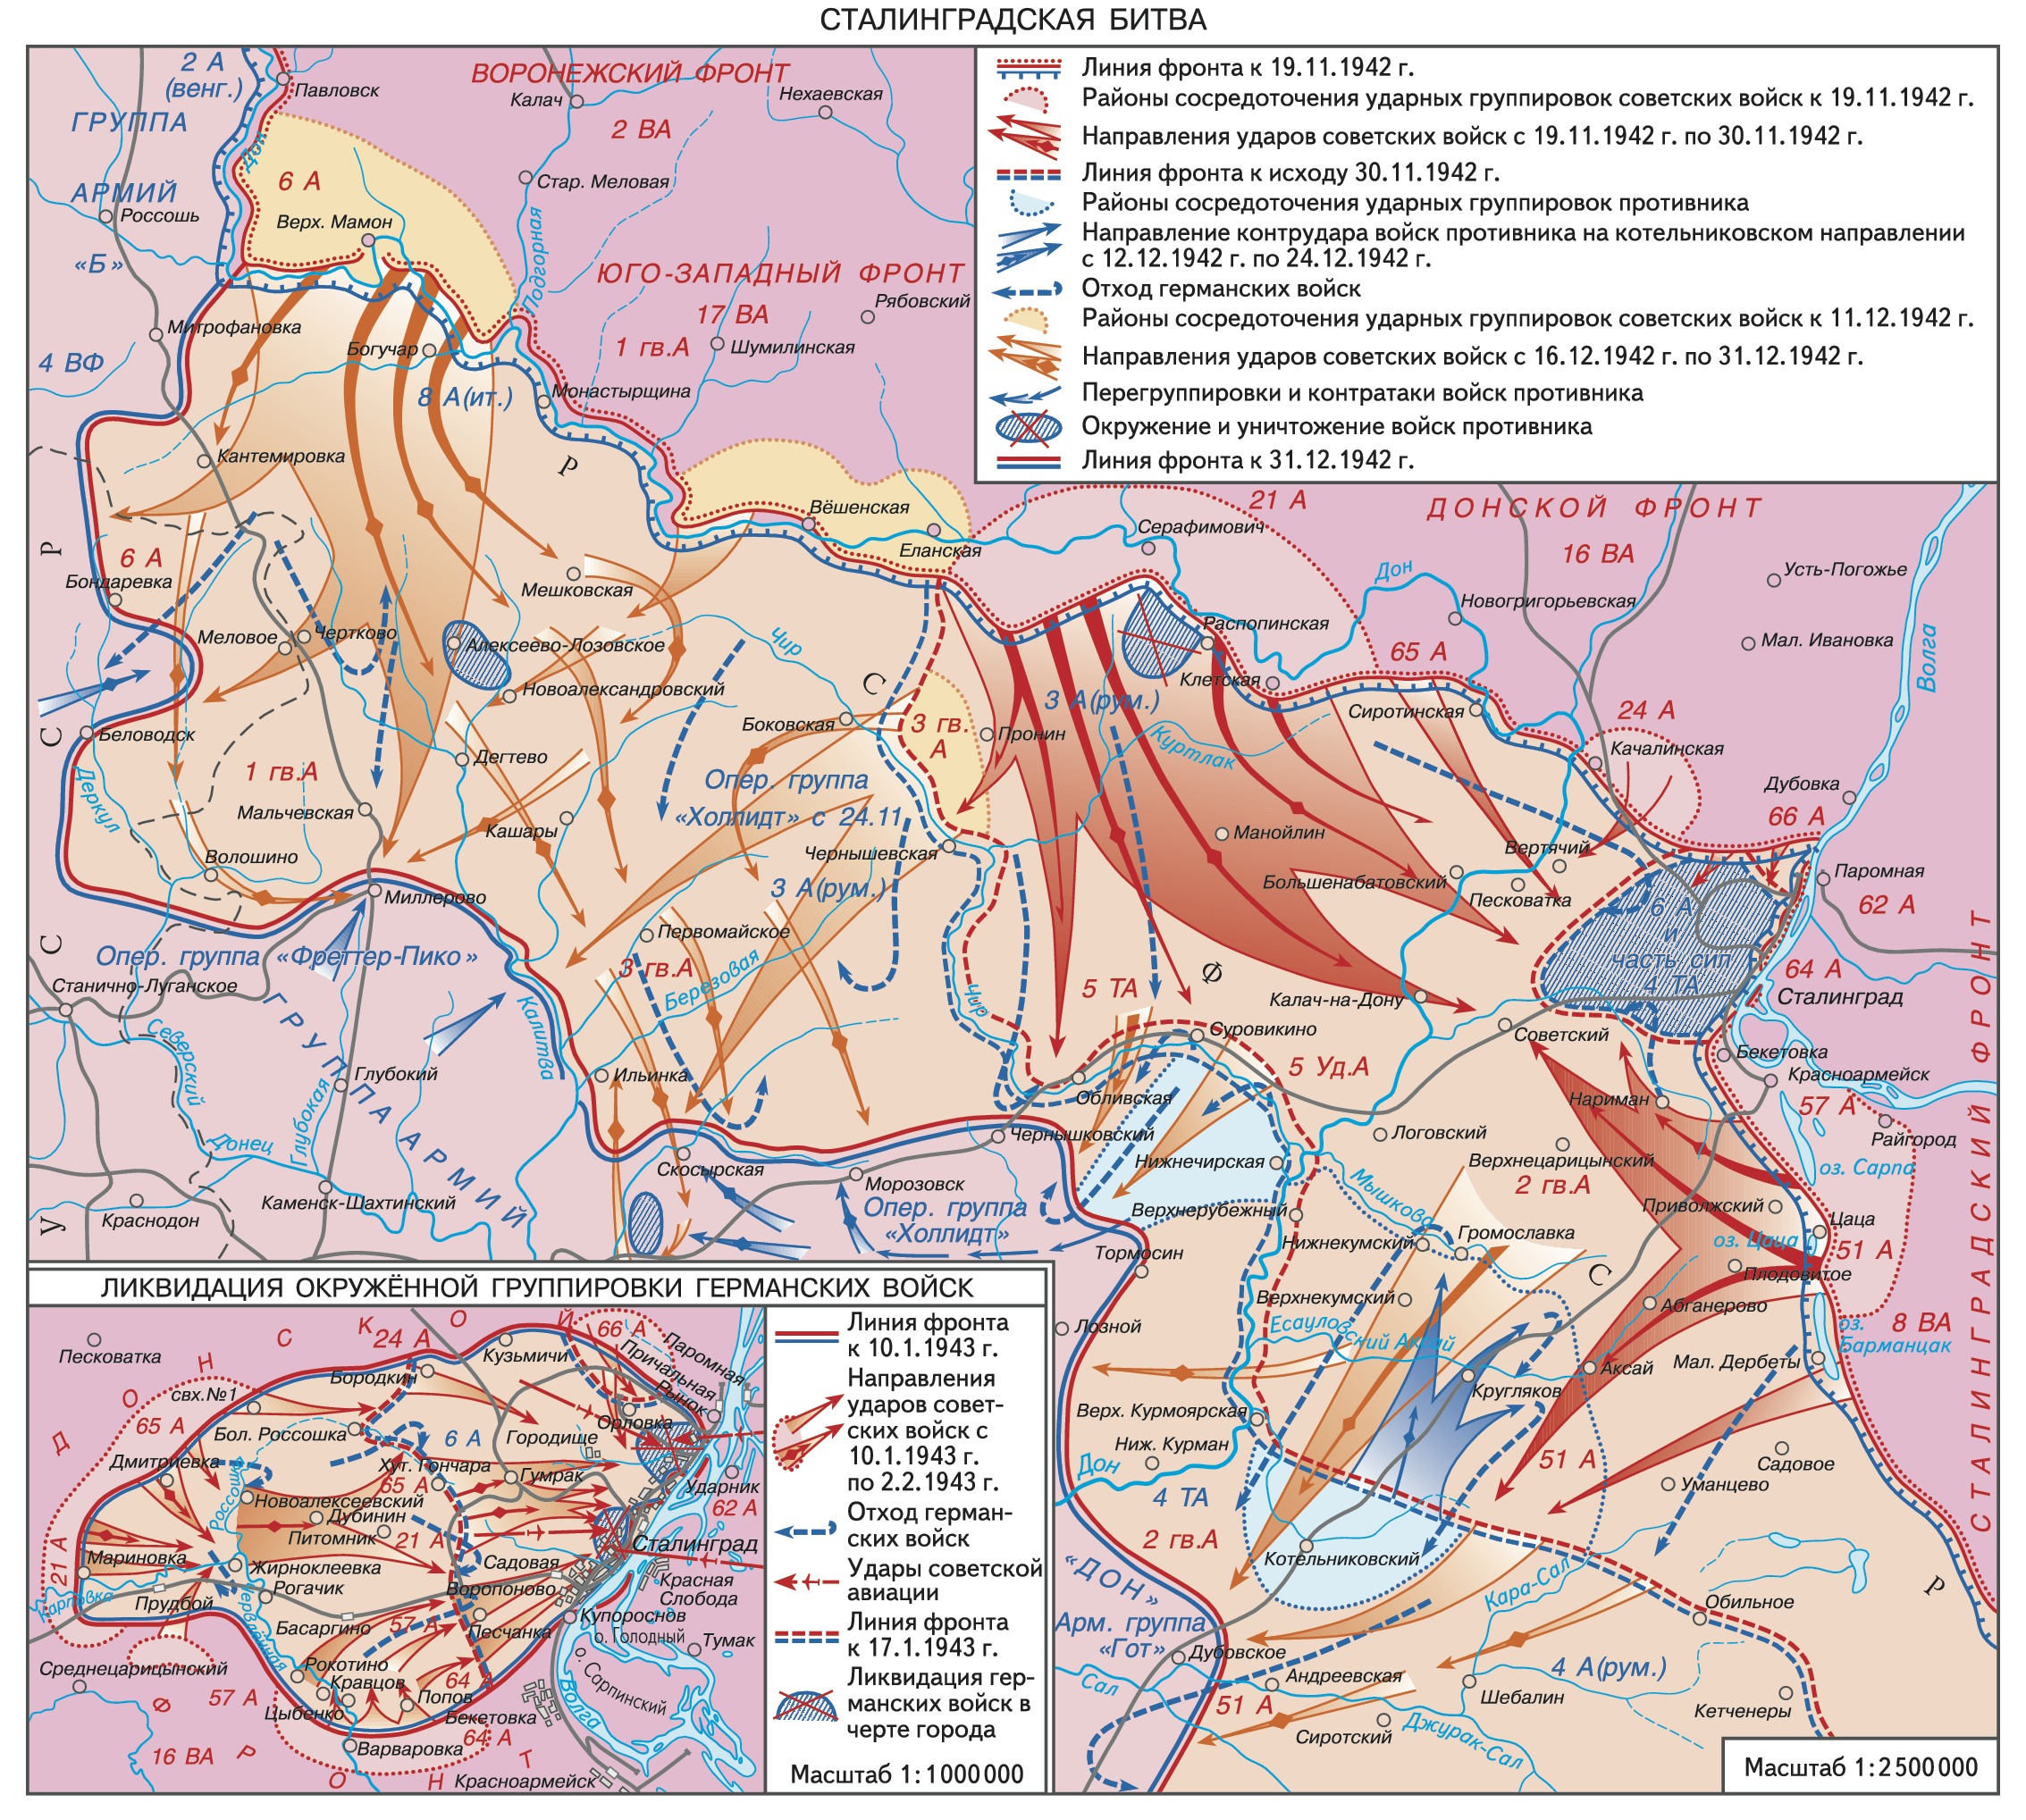 Наступление красной армии от линии фронта. Карта Сталинградской битвы 1942-1943. Карта Сталинградской битвы 1942 года. Сталинградская битва (17 июля 1942 — 2 февраля 1943 года) карта.